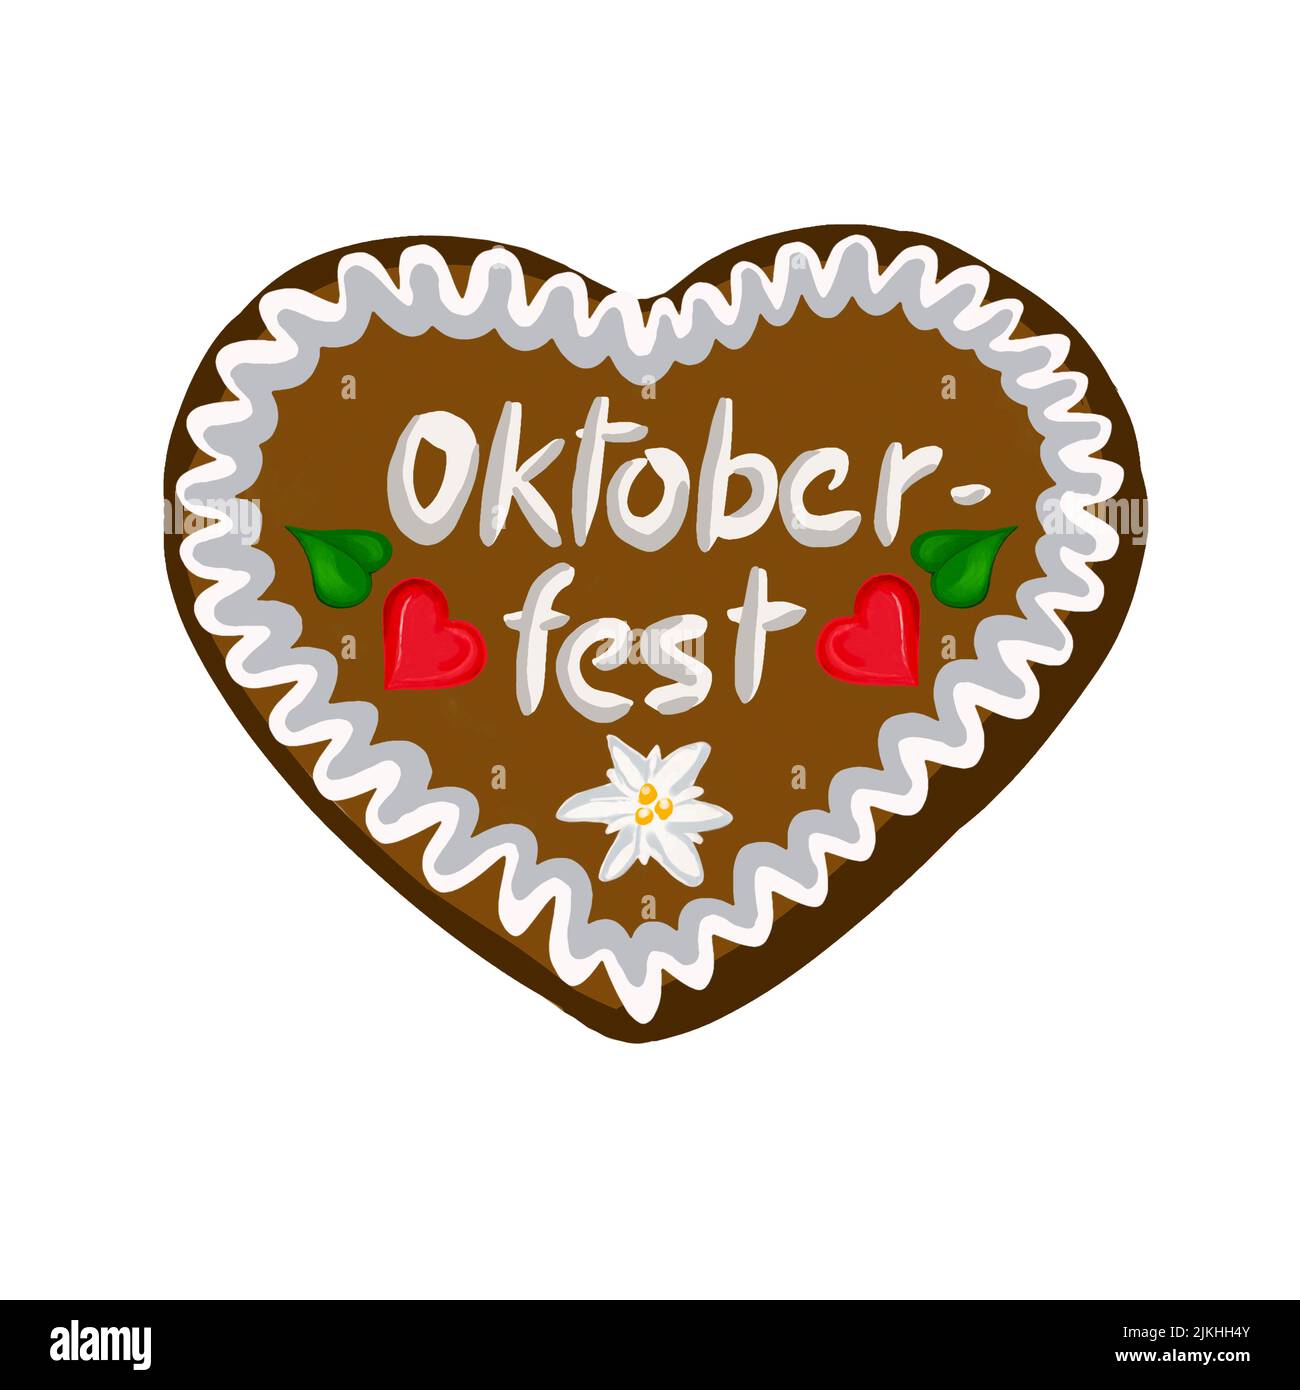 Pan de jengibre corazón Oktoberfest con edelweiss Foto de stock